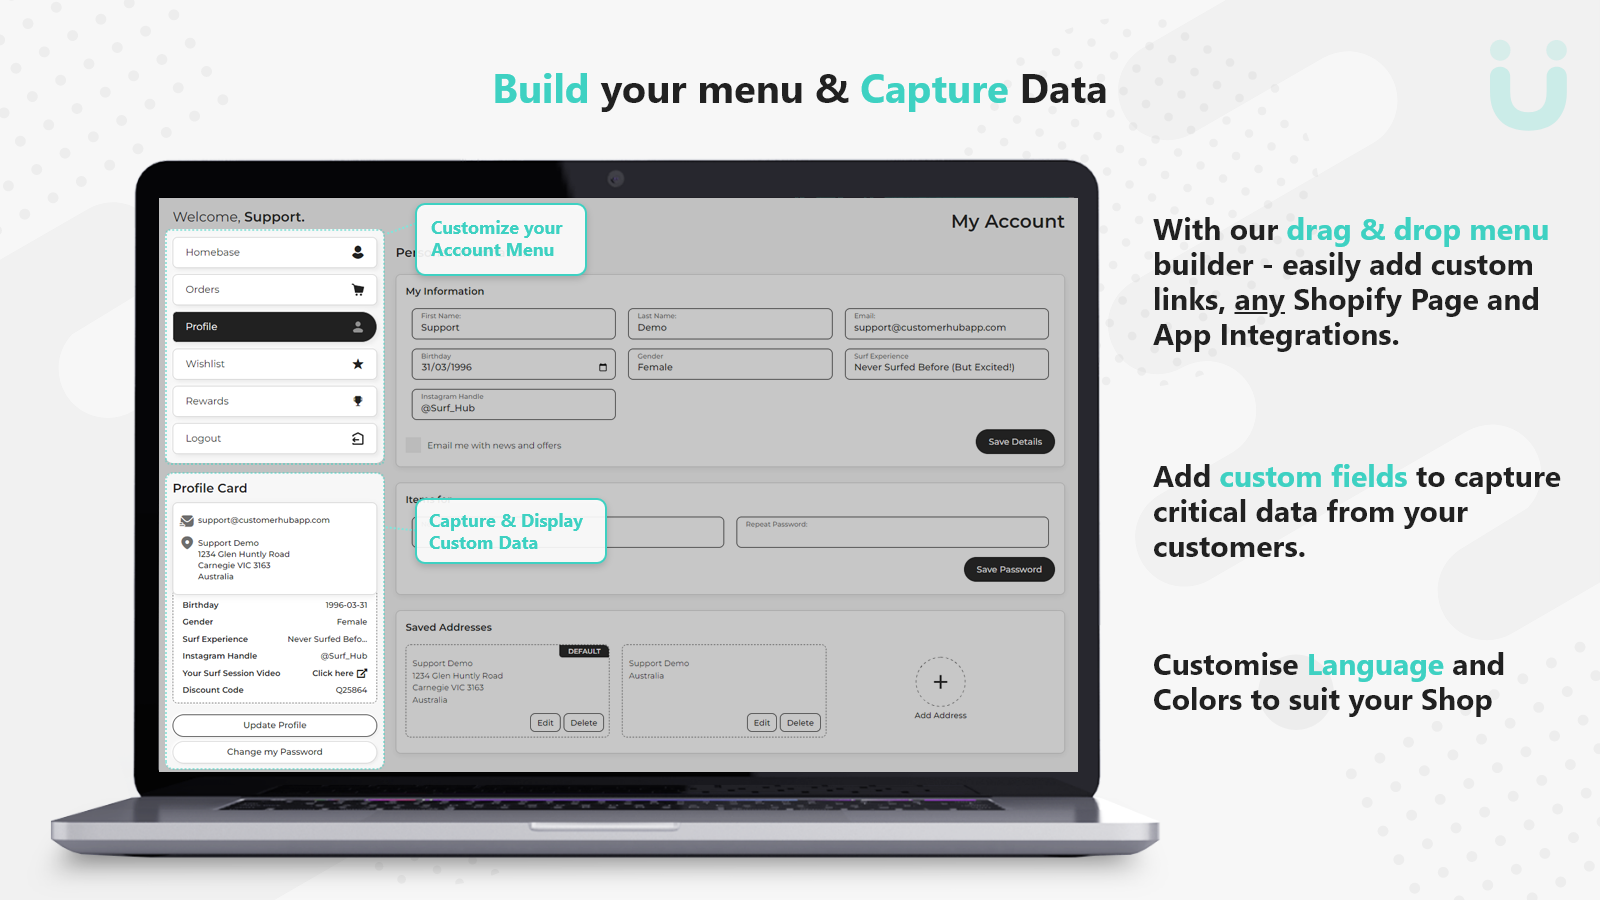 Construa seu menu e Capture seus Dados